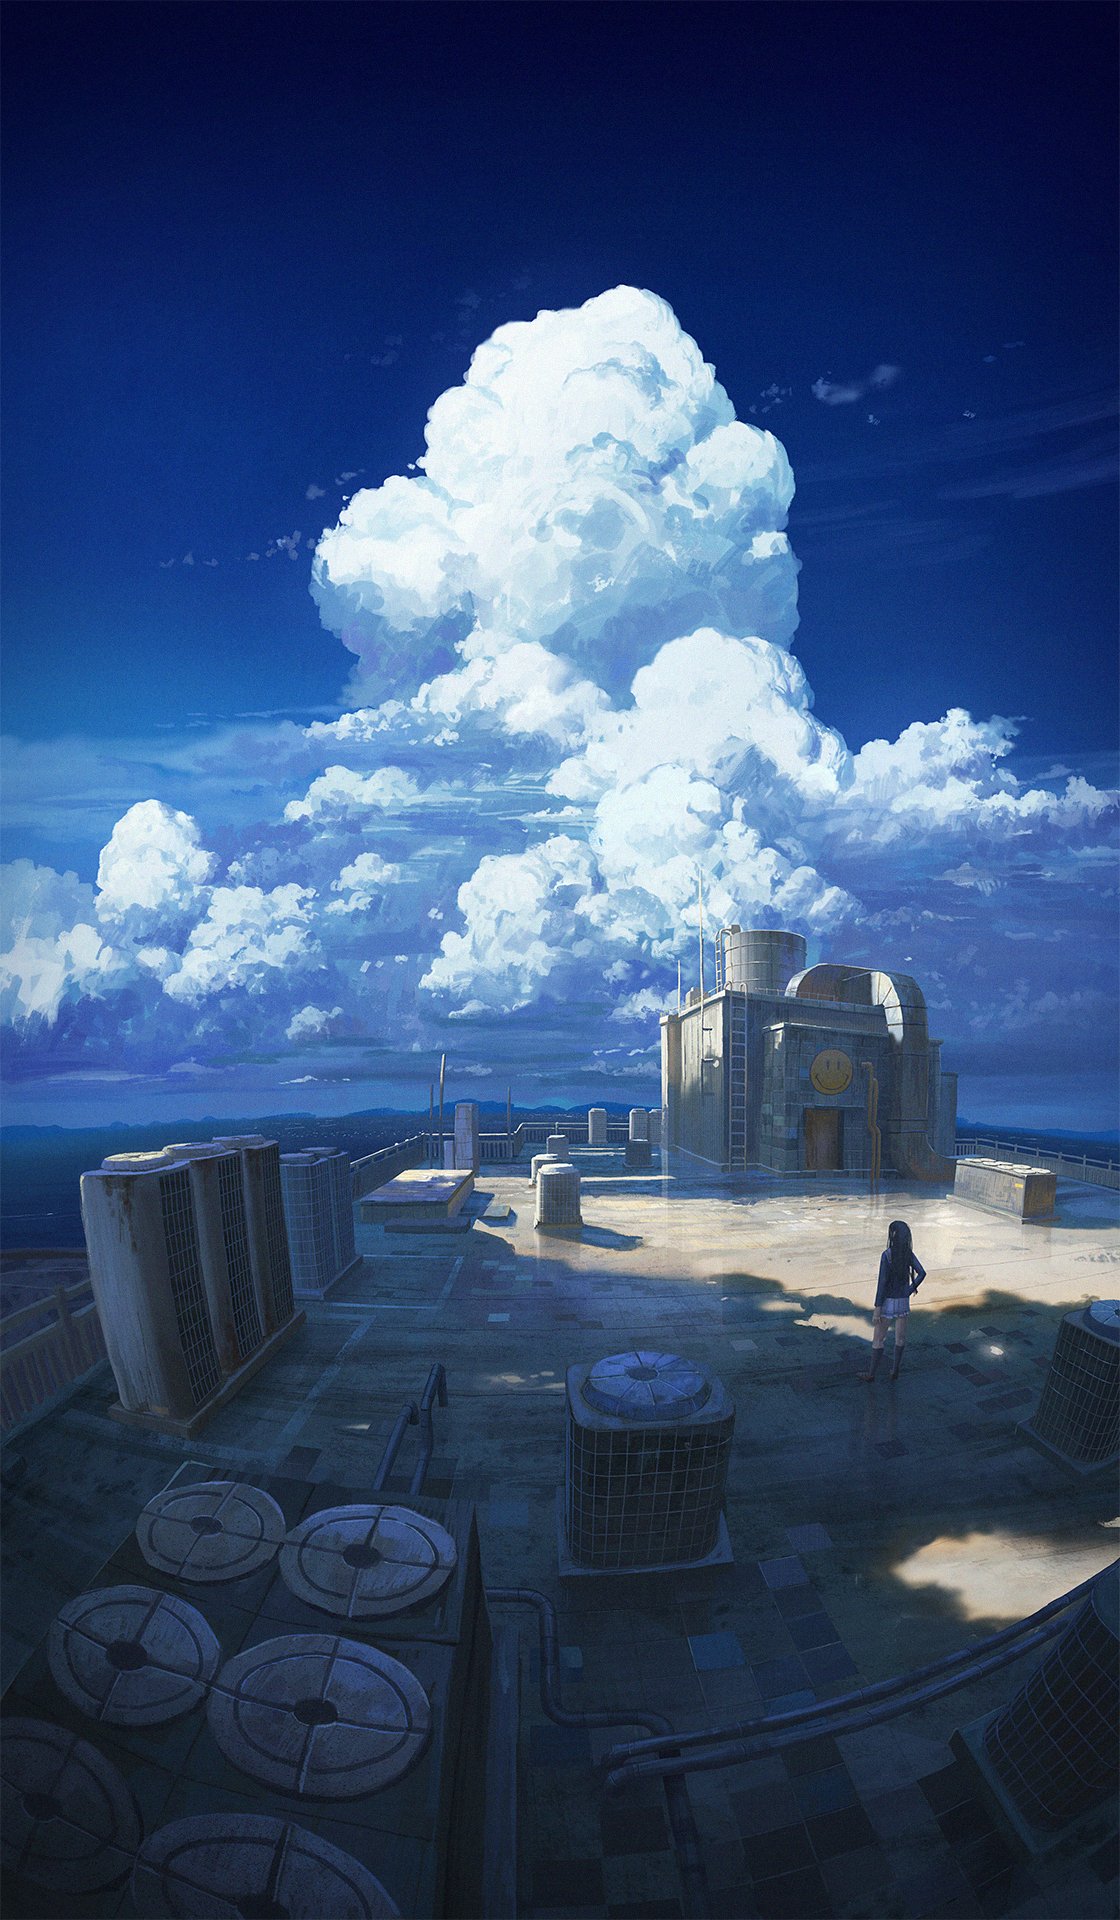 General 1120x1920 landscape fictional digital art illustration portrait rooftops clouds cumulus sky